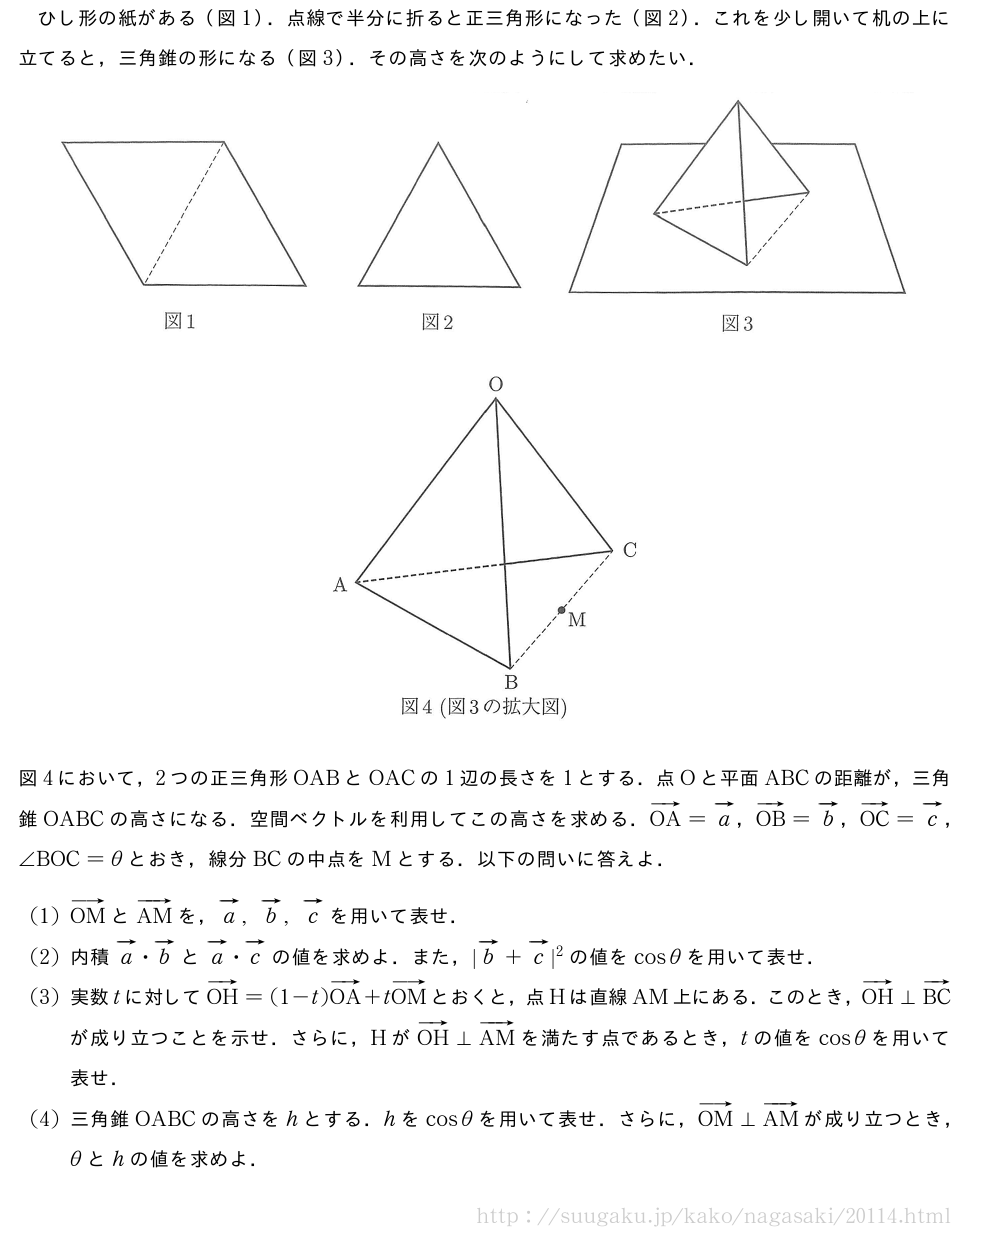 ひし形の紙がある（図1）．点線で半分に折ると正三角形になった（図2）．これを少し開いて机の上に立てると，三角錐の形になる（図3）．その高さを次のようにして求めたい．（プレビューでは図は省略します）（プレビューでは図は省略します）図4において，2つの正三角形OABとOACの1辺の長さを1とする．点Oと平面ABCの距離が，三角錐OABCの高さになる．空間ベクトルを利用してこの高さを求める．ベクトルOA=ベクトルa，ベクトルOB=ベクトルb，ベクトルOC=ベクトルc，∠BOC=θとおき，線分BCの中点をMとする．以下の問いに答えよ．(1)ベクトルOMとベクトルAMを，ベクトルa,ベクトルb,ベクトルcを用いて表せ．(2)内積ベクトルa・ベクトルbとベクトルa・ベクトルcの値を求めよ．また，|ベクトルb+ベクトルc|^2の値をcosθを用いて表せ．(3)実数tに対してベクトルOH=(1-t)ベクトルOA+tベクトルOMとおくと，点Hは直線AM上にある．このとき，ベクトルOH⊥ベクトルBCが成り立つことを示せ．さらに，HがベクトルOH⊥ベクトルAMを満たす点であるとき，tの値をcosθを用いて表せ．(4)三角錐OABCの高さをhとする．hをcosθを用いて表せ．さらに，ベクトルOM⊥ベクトルAMが成り立つとき，θとhの値を求めよ．